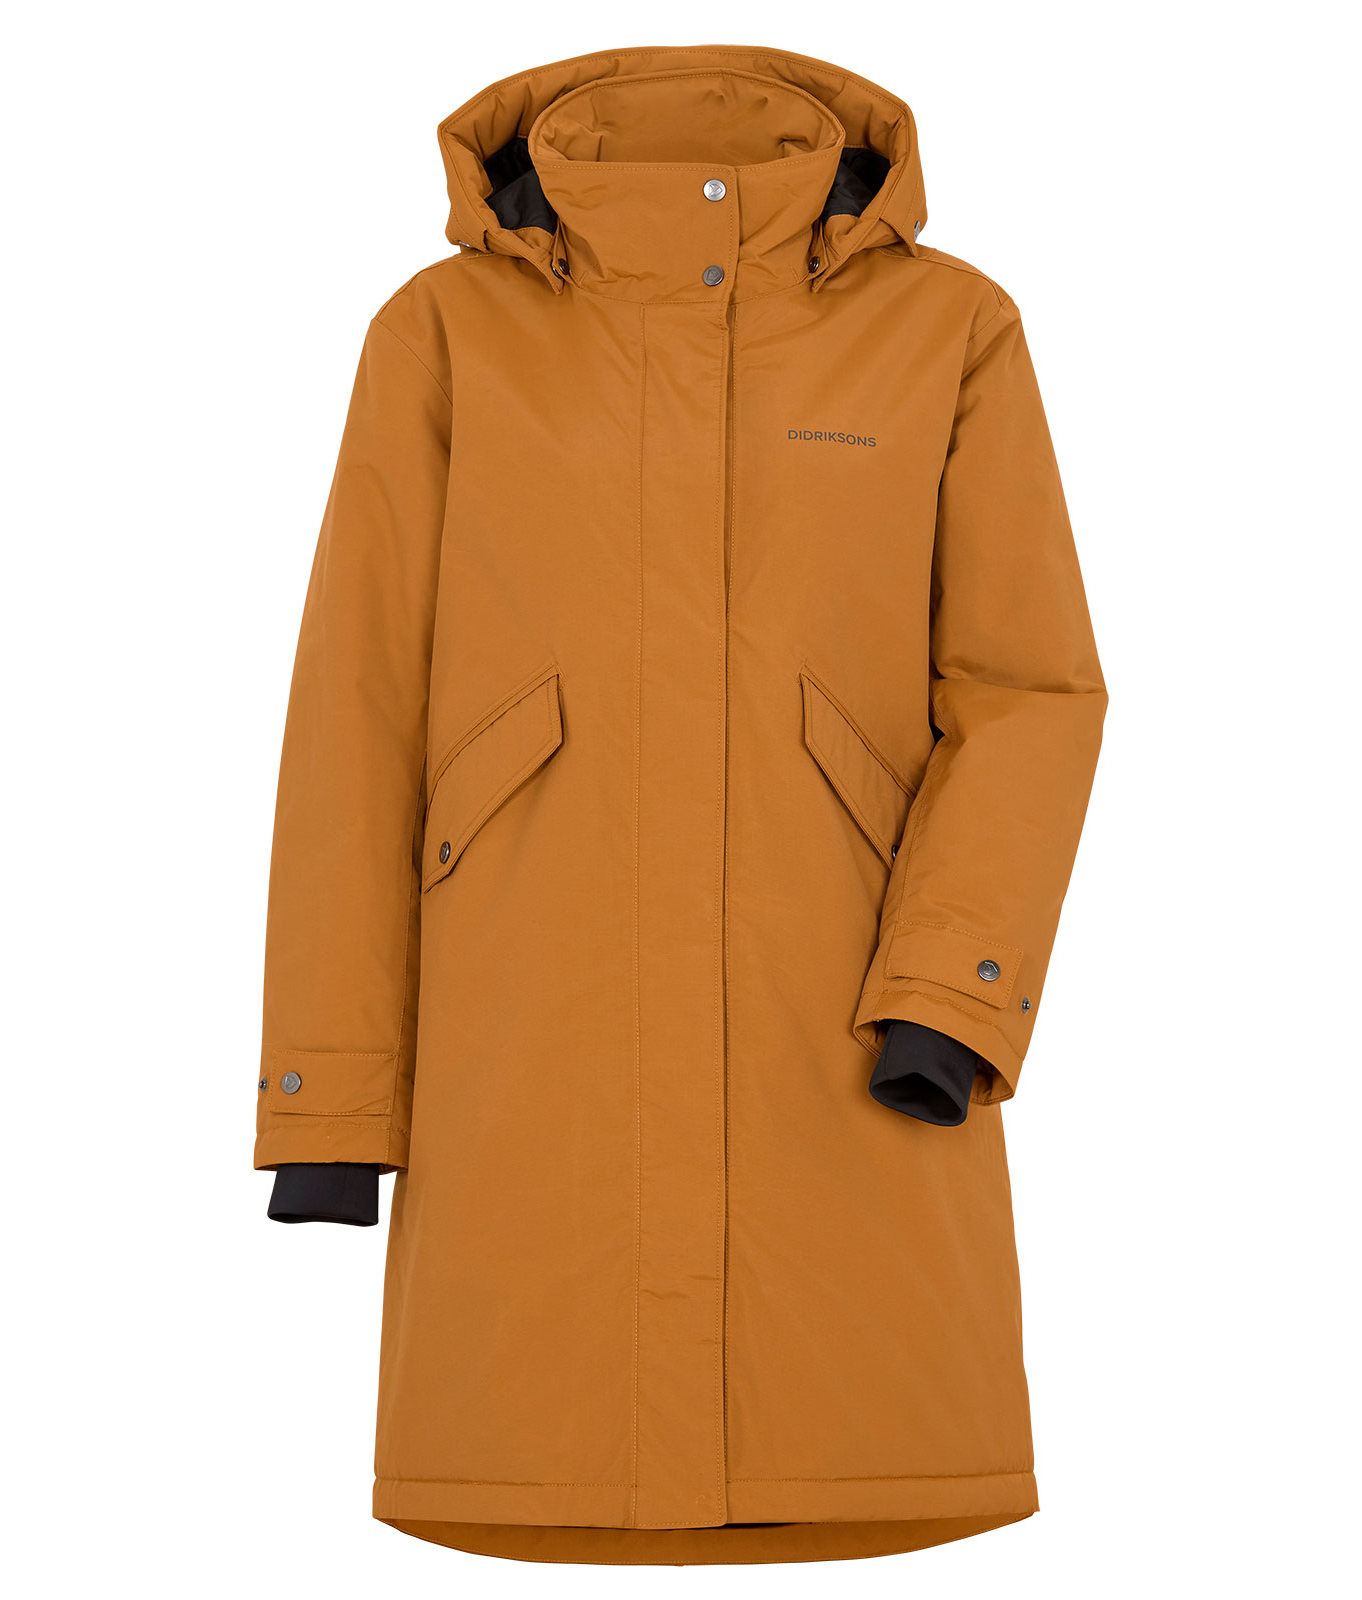 Куртка женская JOSEFINE — Didriksons 1913 — 504289 — Зимняя одежда для  города — купить в интернет магазине за 16800.00 руб